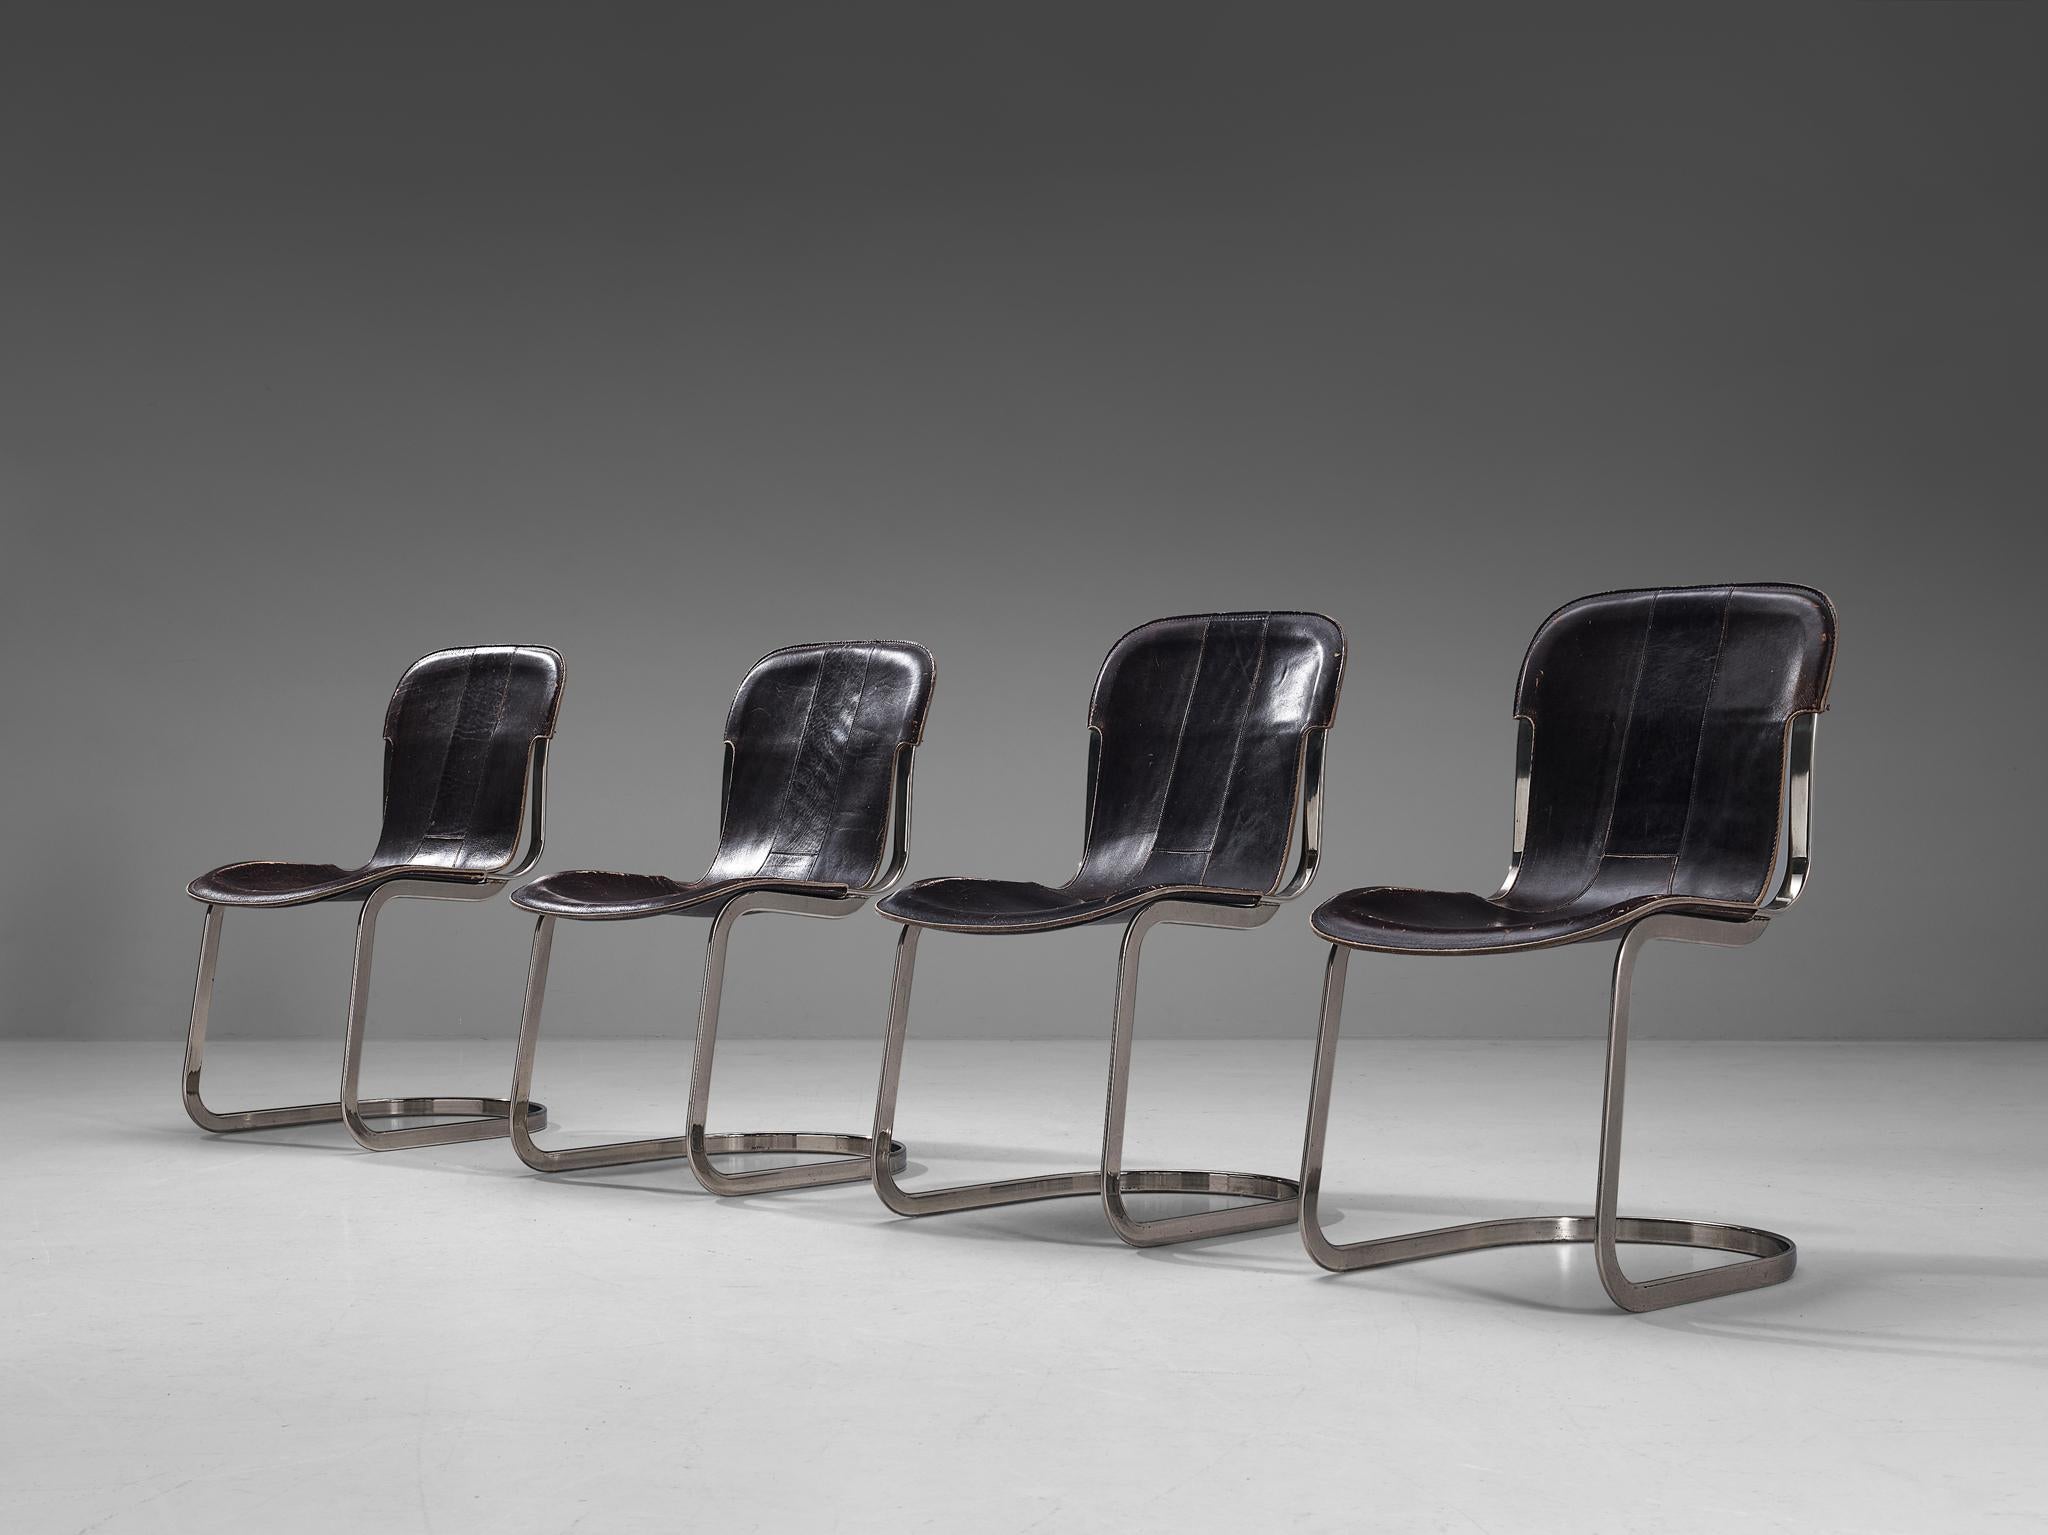 Cidue, Satz von vier Stühlen, Chrom, Leder, Italien 1970er.

Freischwingende Esszimmerstühle mit verchromtem Flachstahlrohrgestell. Die Sitzfläche und die Rückenlehne sind aus dickem, dunkelbraunem Sattelleder. Das Leder weist eine schöne,